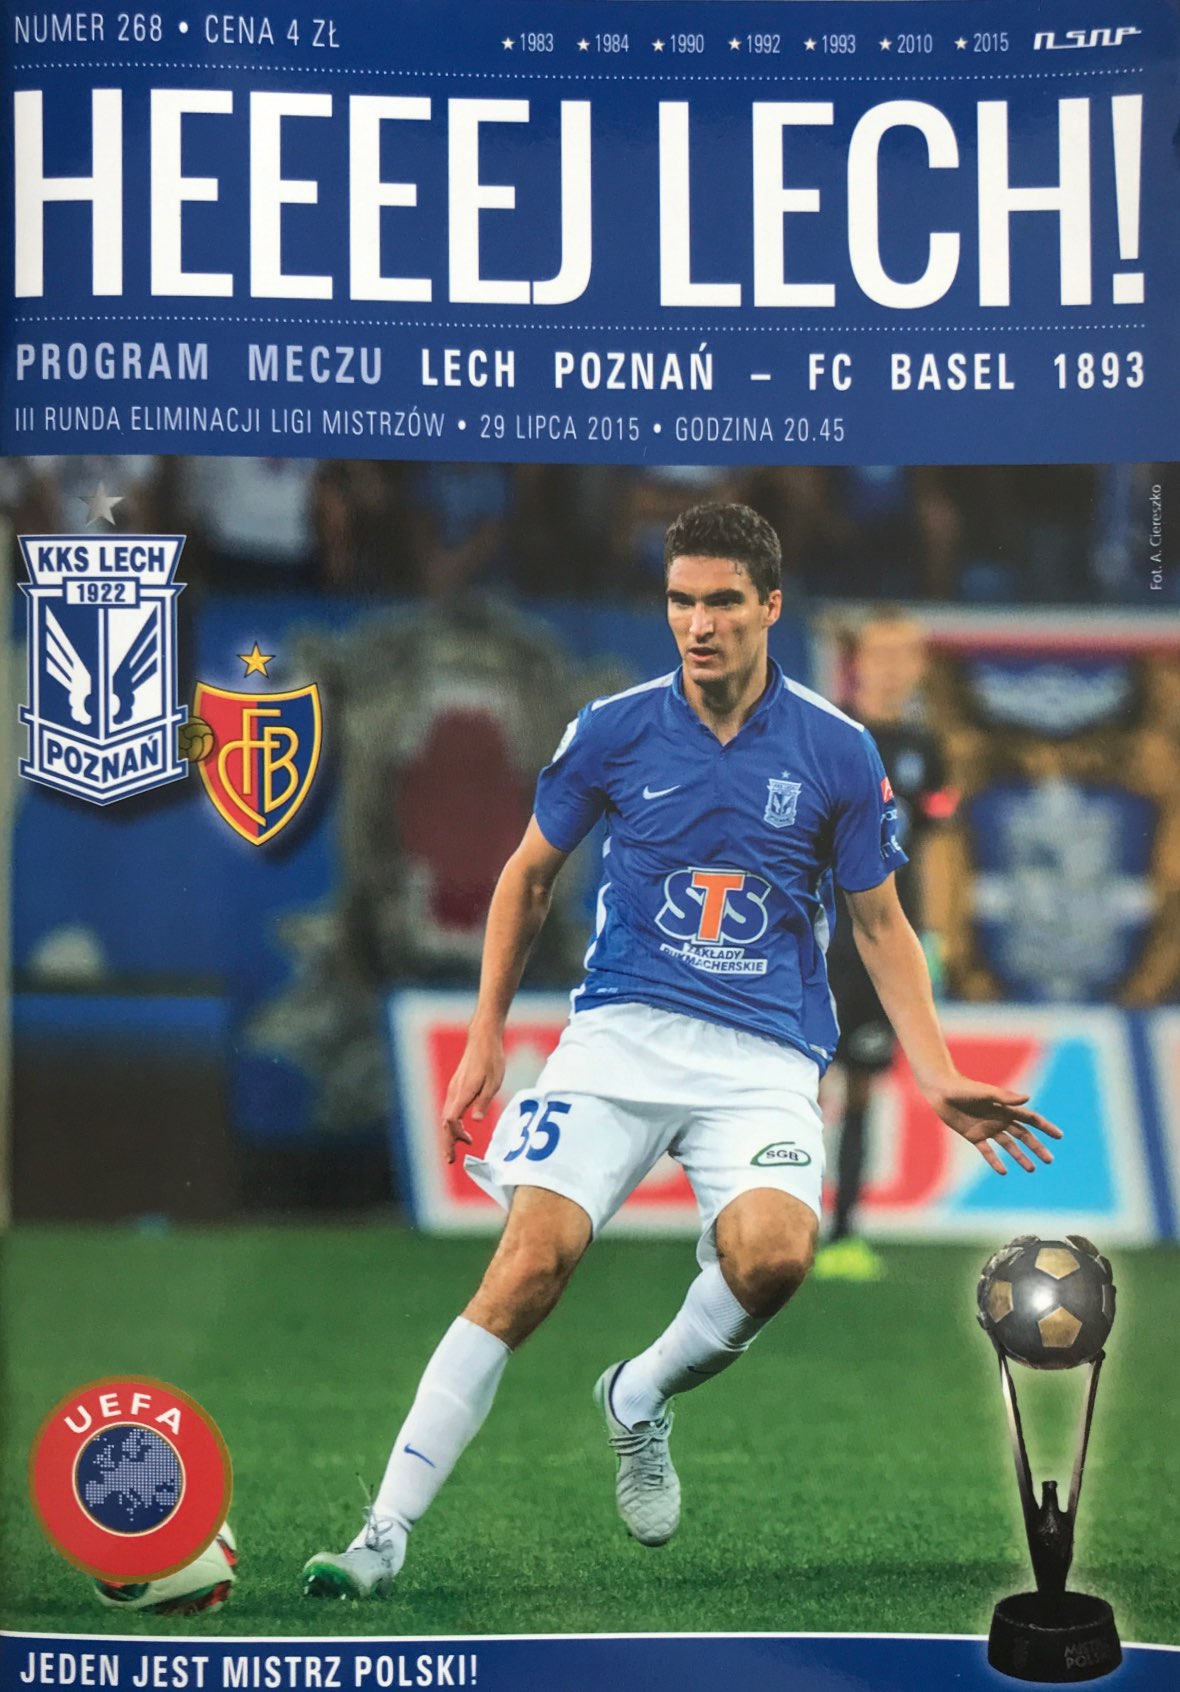 Program meczowy Lech Poznań - FC Basel 1:3 (29.07.2015).